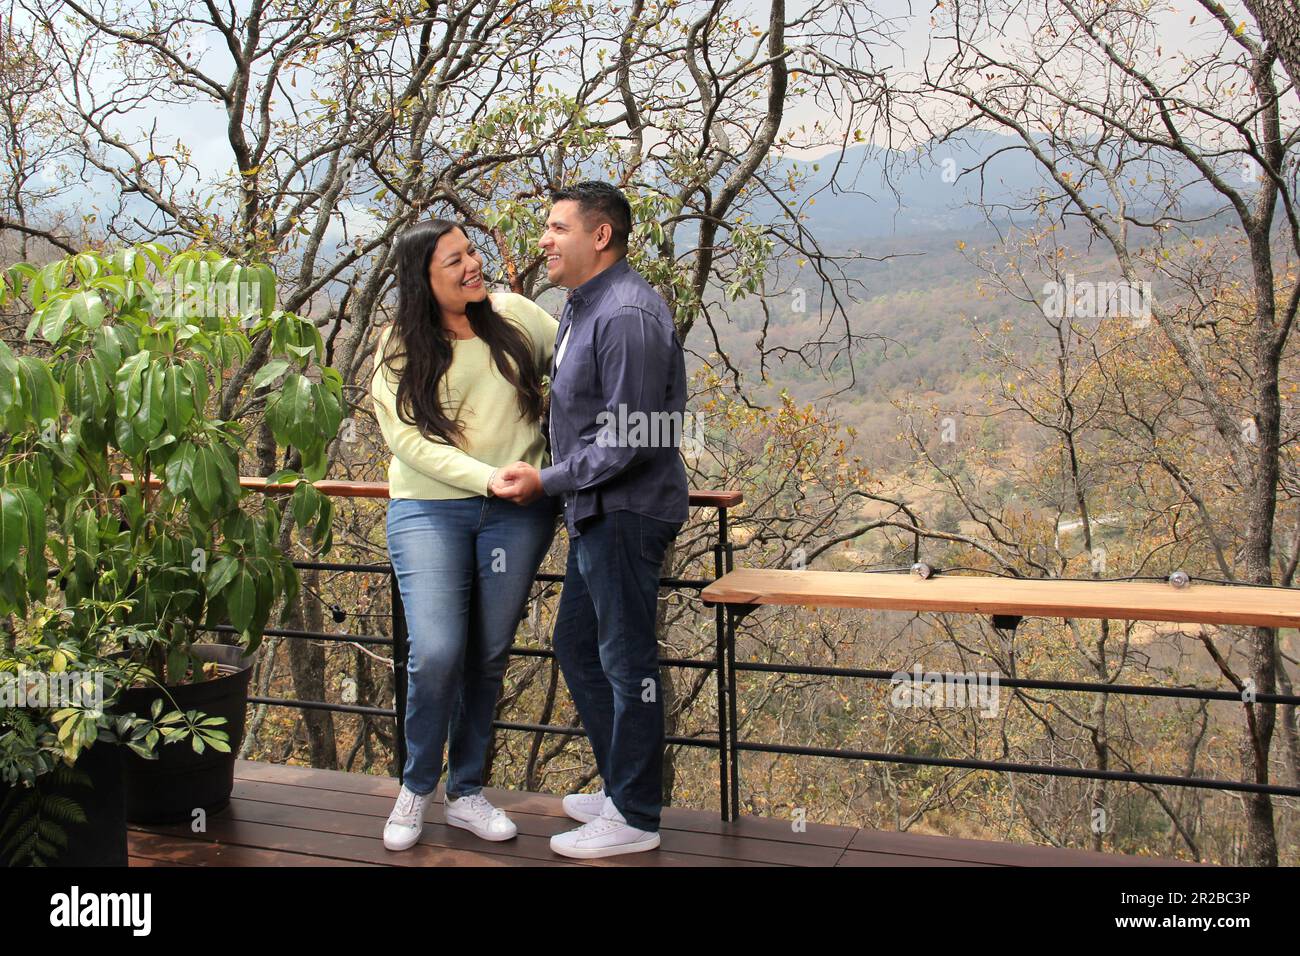 Vierzig Jahre altes erwachsenes Latino-Paar verbringen einen romantischen Kurzurlaub in einer Hütte mitten im Wald, um ihren Liebesjubiläum zu feiern Stockfoto